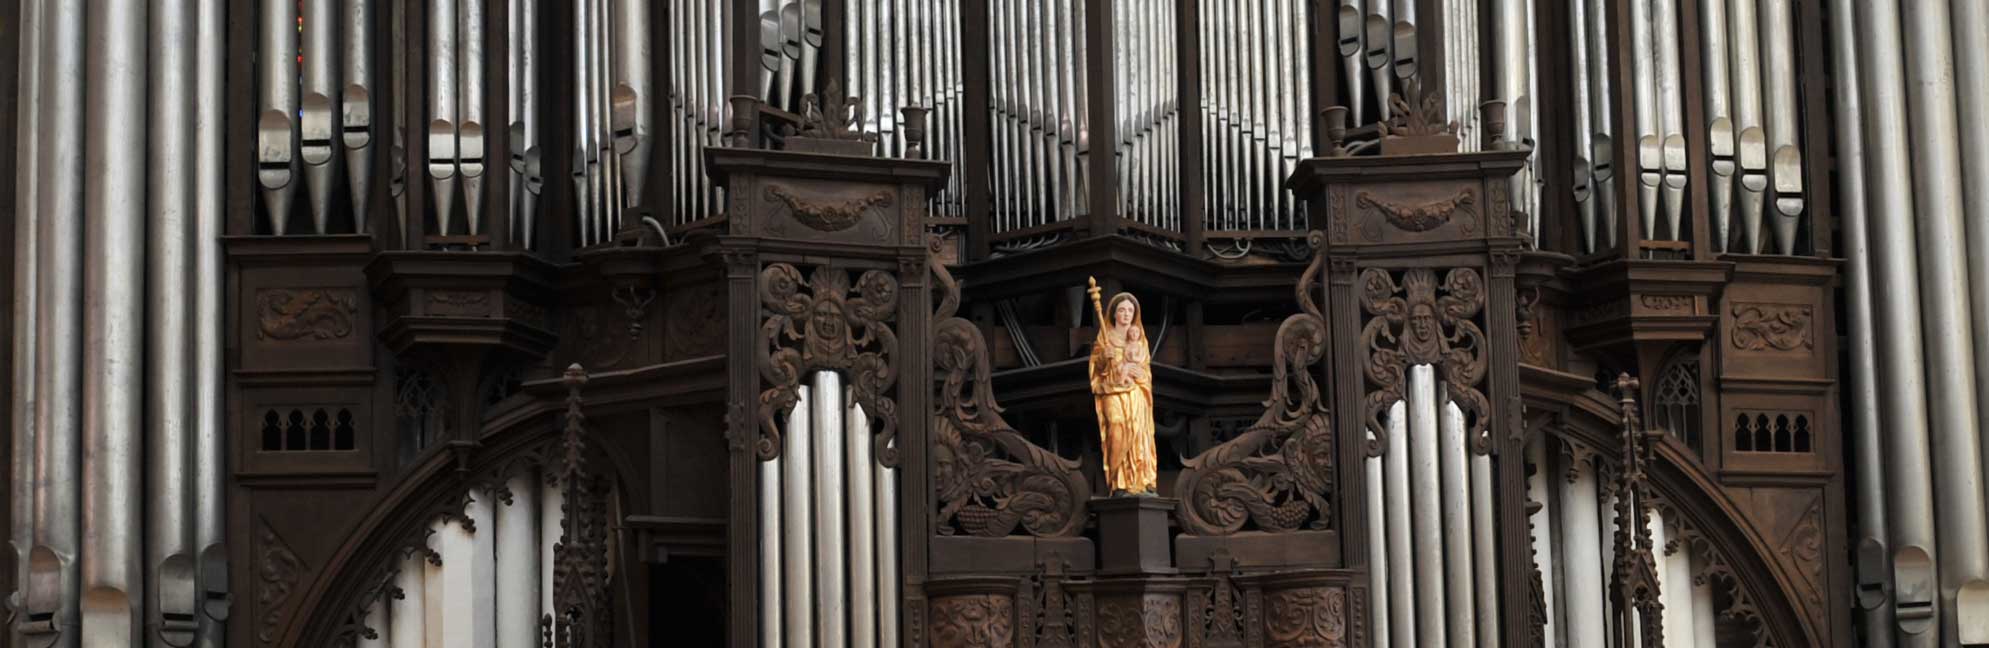 grand orgue - cathédrale de Chartres